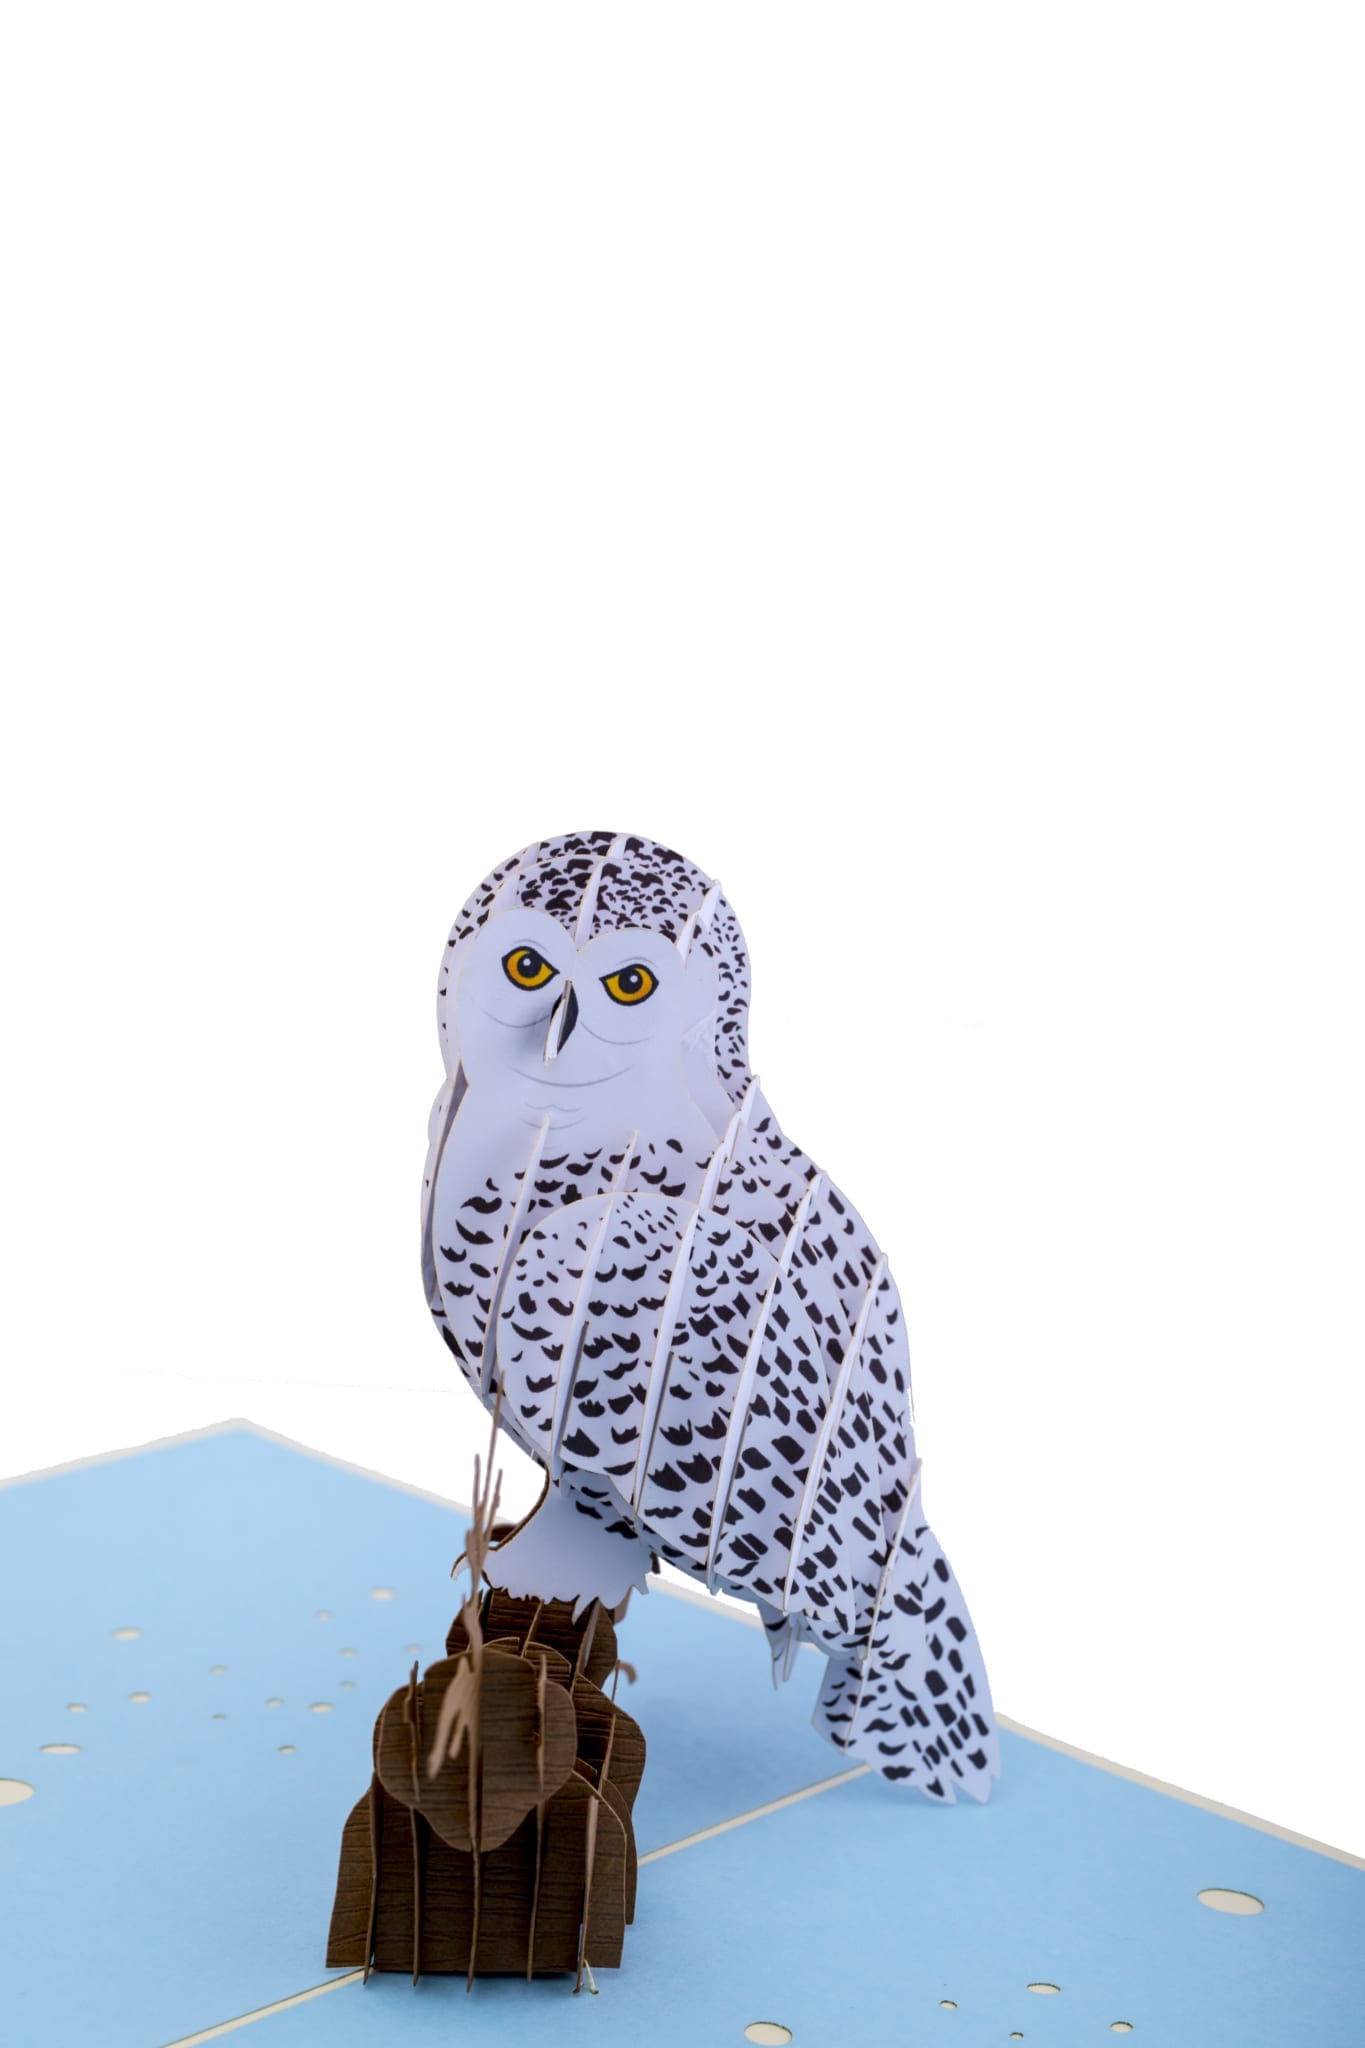 Tha 2184 Japanese Snowy Owl pop up card